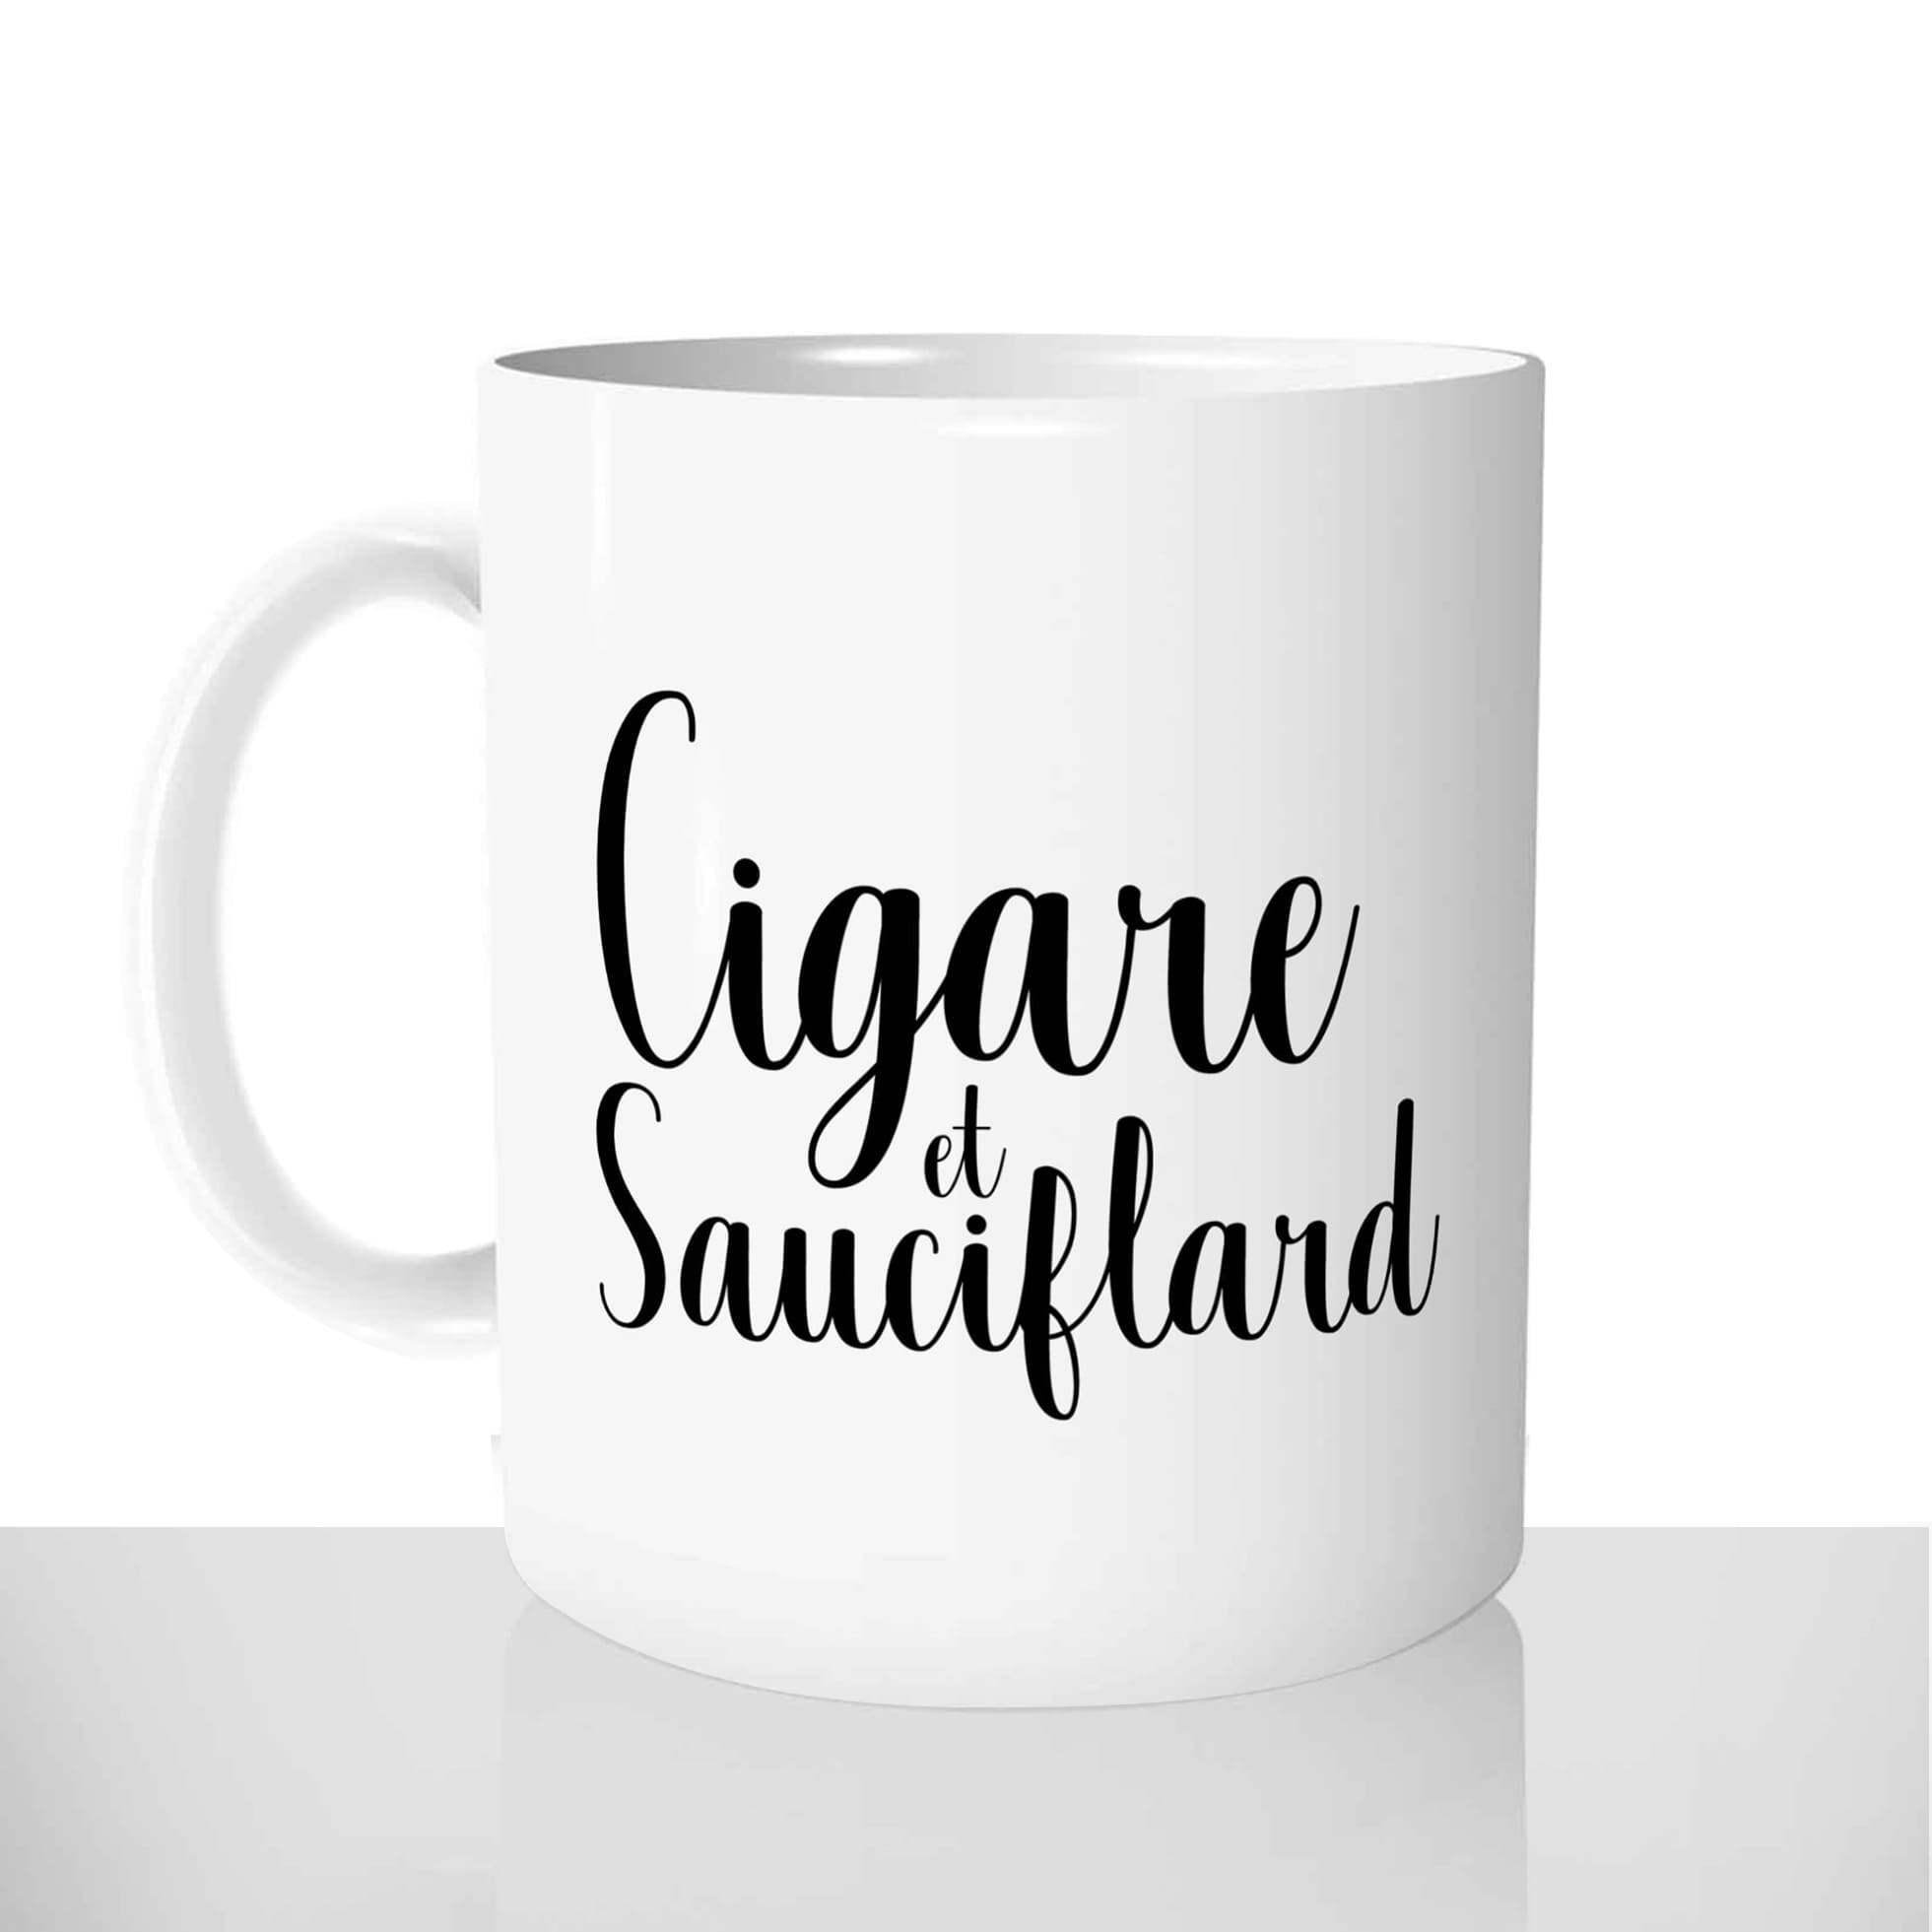 mug classique en céramique 11oz personnalisé personnalisation photo gourmand cigare et sauciflard saucisson tabac chou offrir cadeau